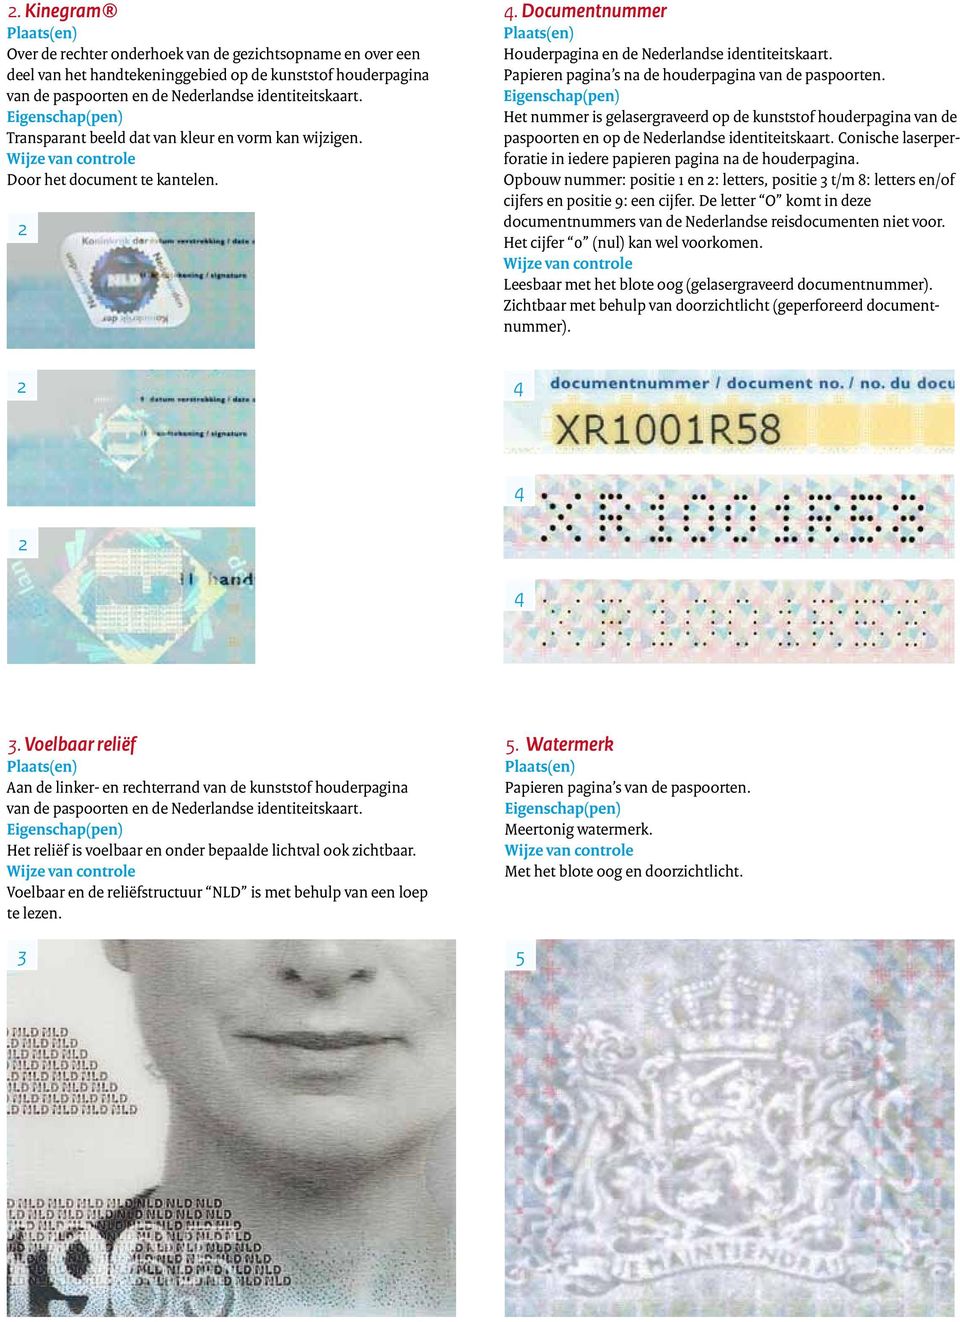 Papieren pagina s na de houderpagina van de paspoorten. Het nummer is gelasergraveerd op de kunststof houder pagina van de paspoorten en op de Nederlandse identiteitskaart.